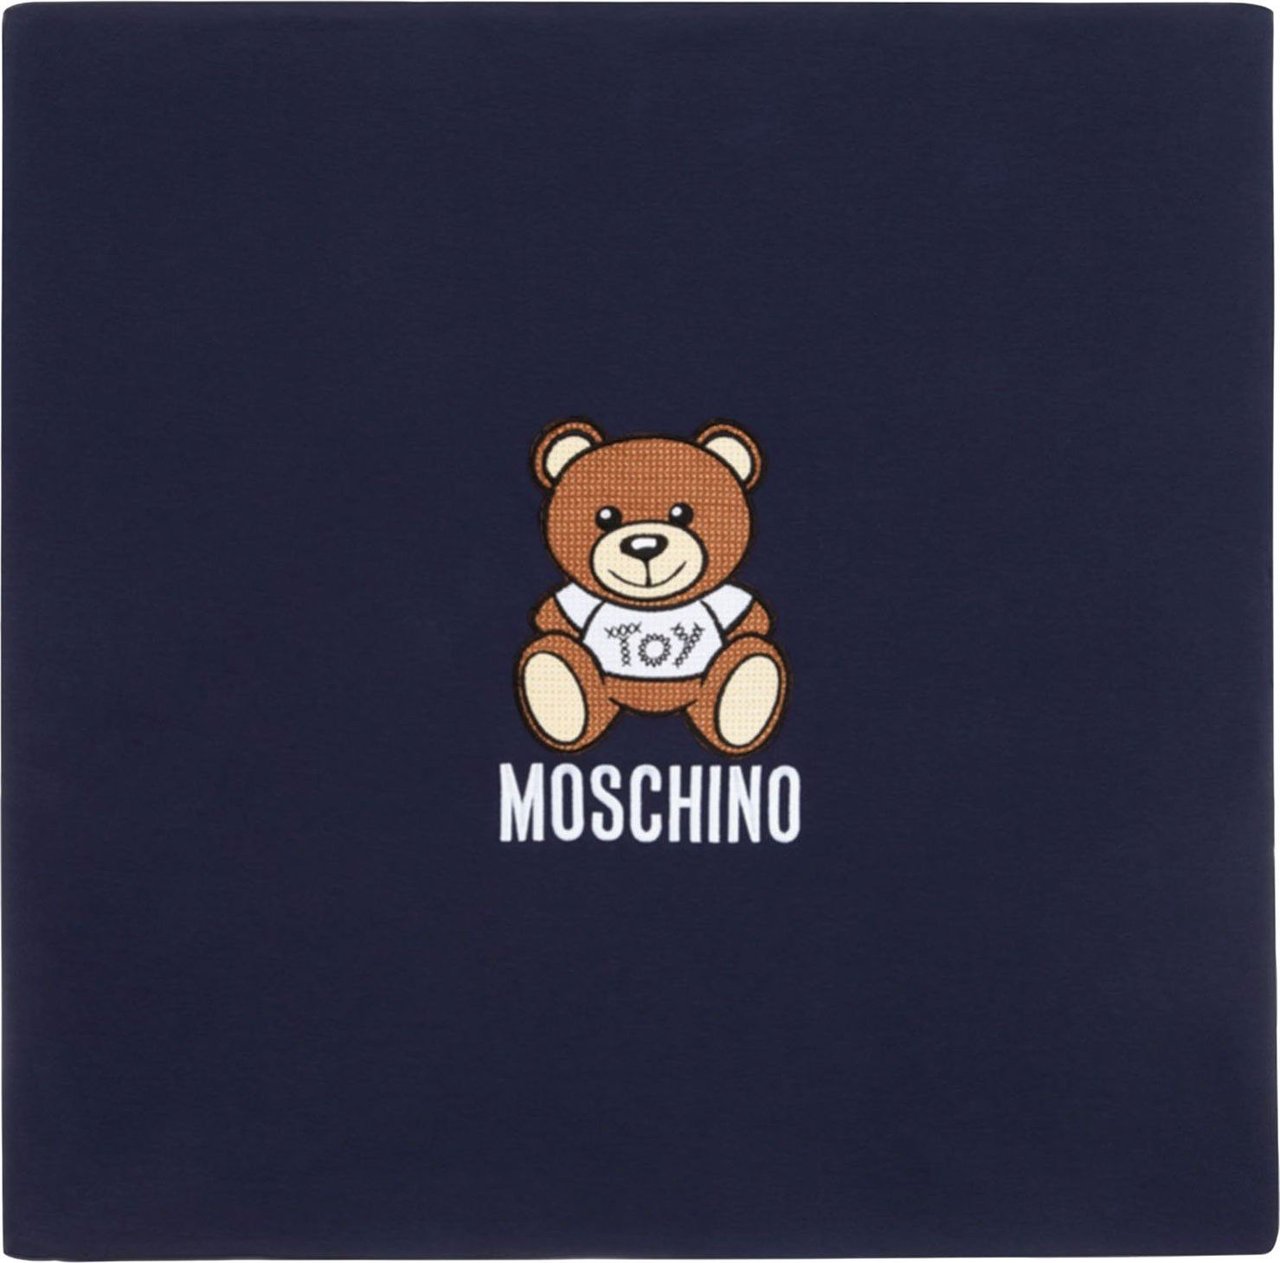 Moschino Moschino MRB005 babyaccessoire navy Blauw